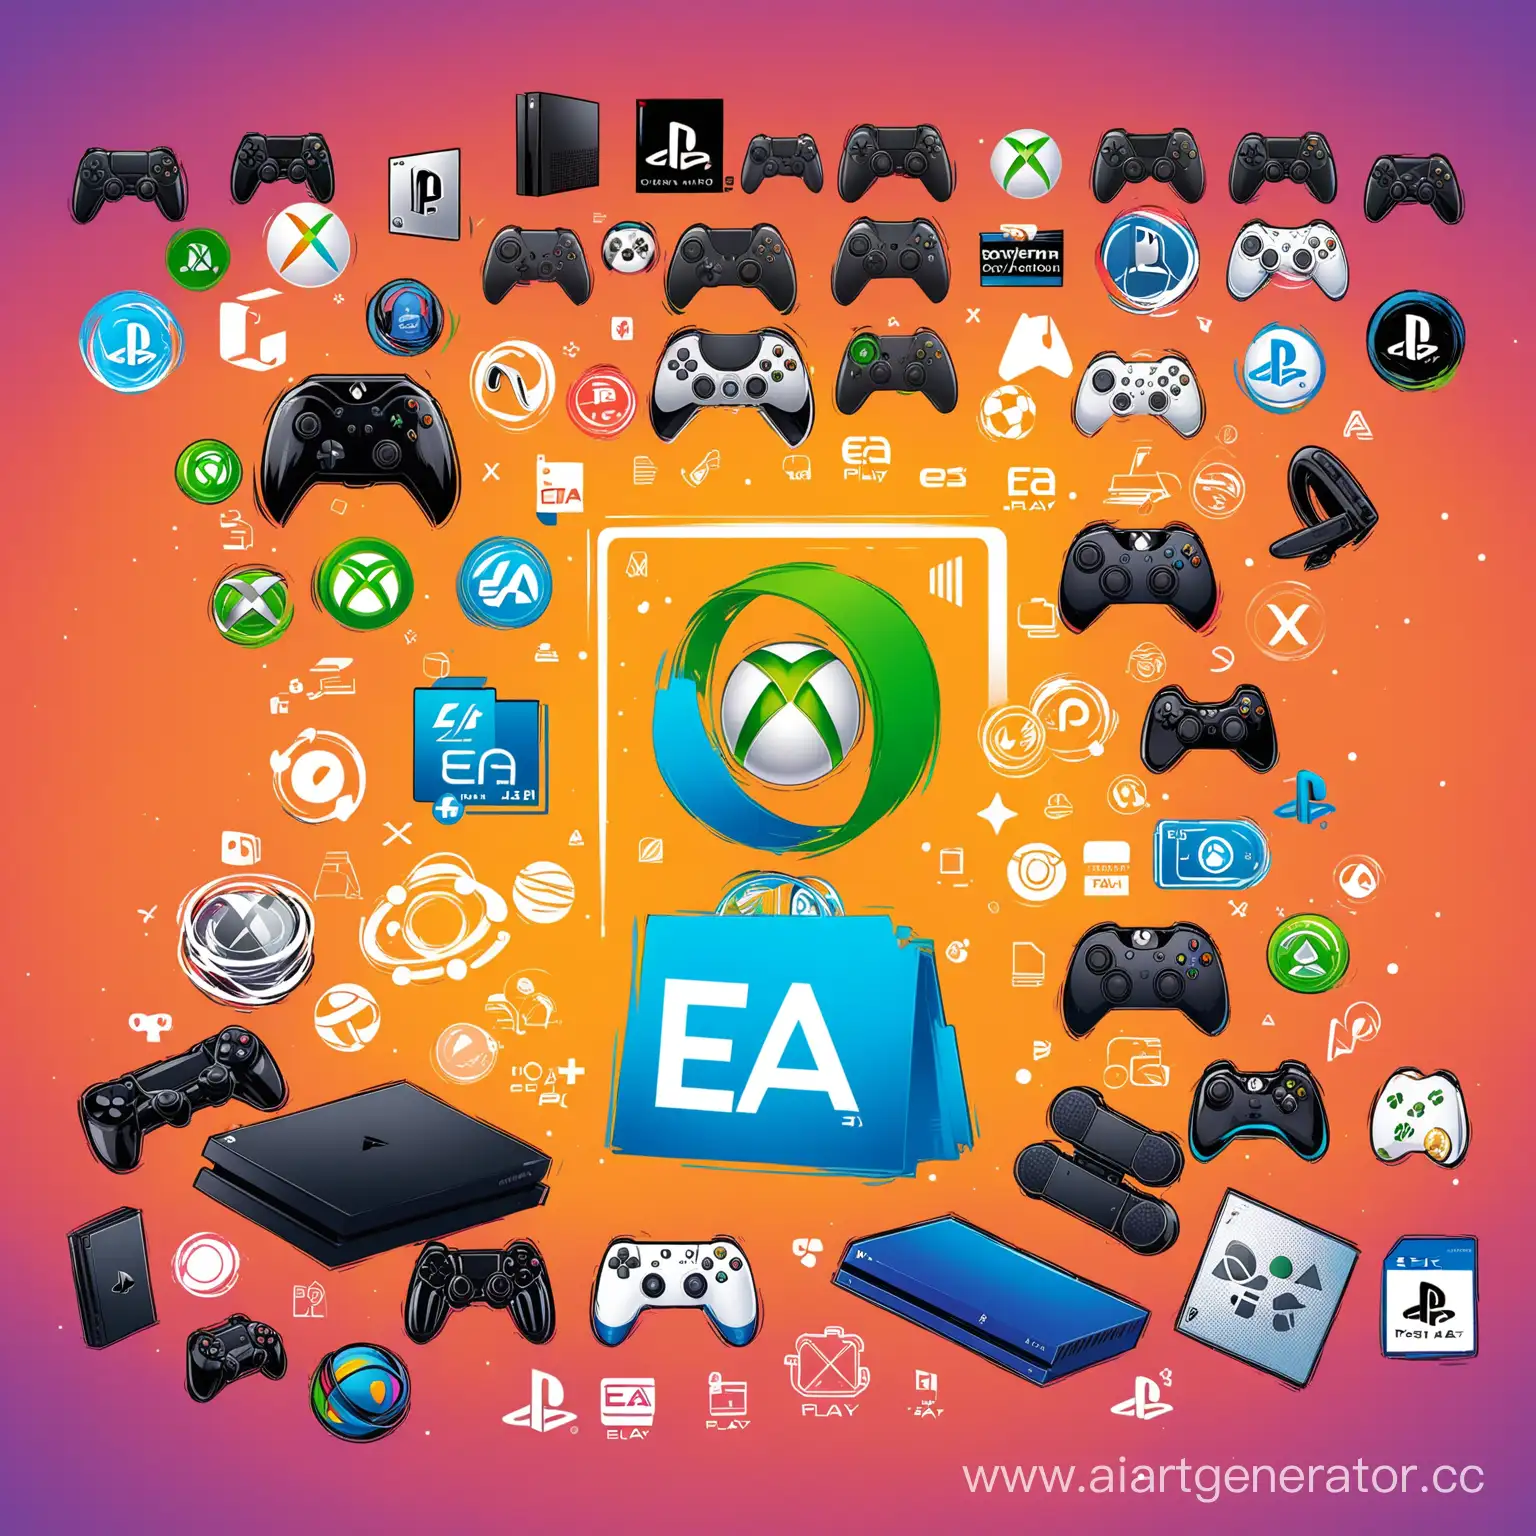 "Разработайте креативную и привлекательную концепцию изображения для рекламного плаката Telegram, рекламирующего продажу игр для платформ PlayStation (PS), Xbox и EA, а также услуги подписки PS, Xbox и EA play. Пожалуйста, опишите изображение в деталях, учитывая такие элементы, как общий макет, цветовая схема и любые графические элементы или иконки, которые должны быть включены".